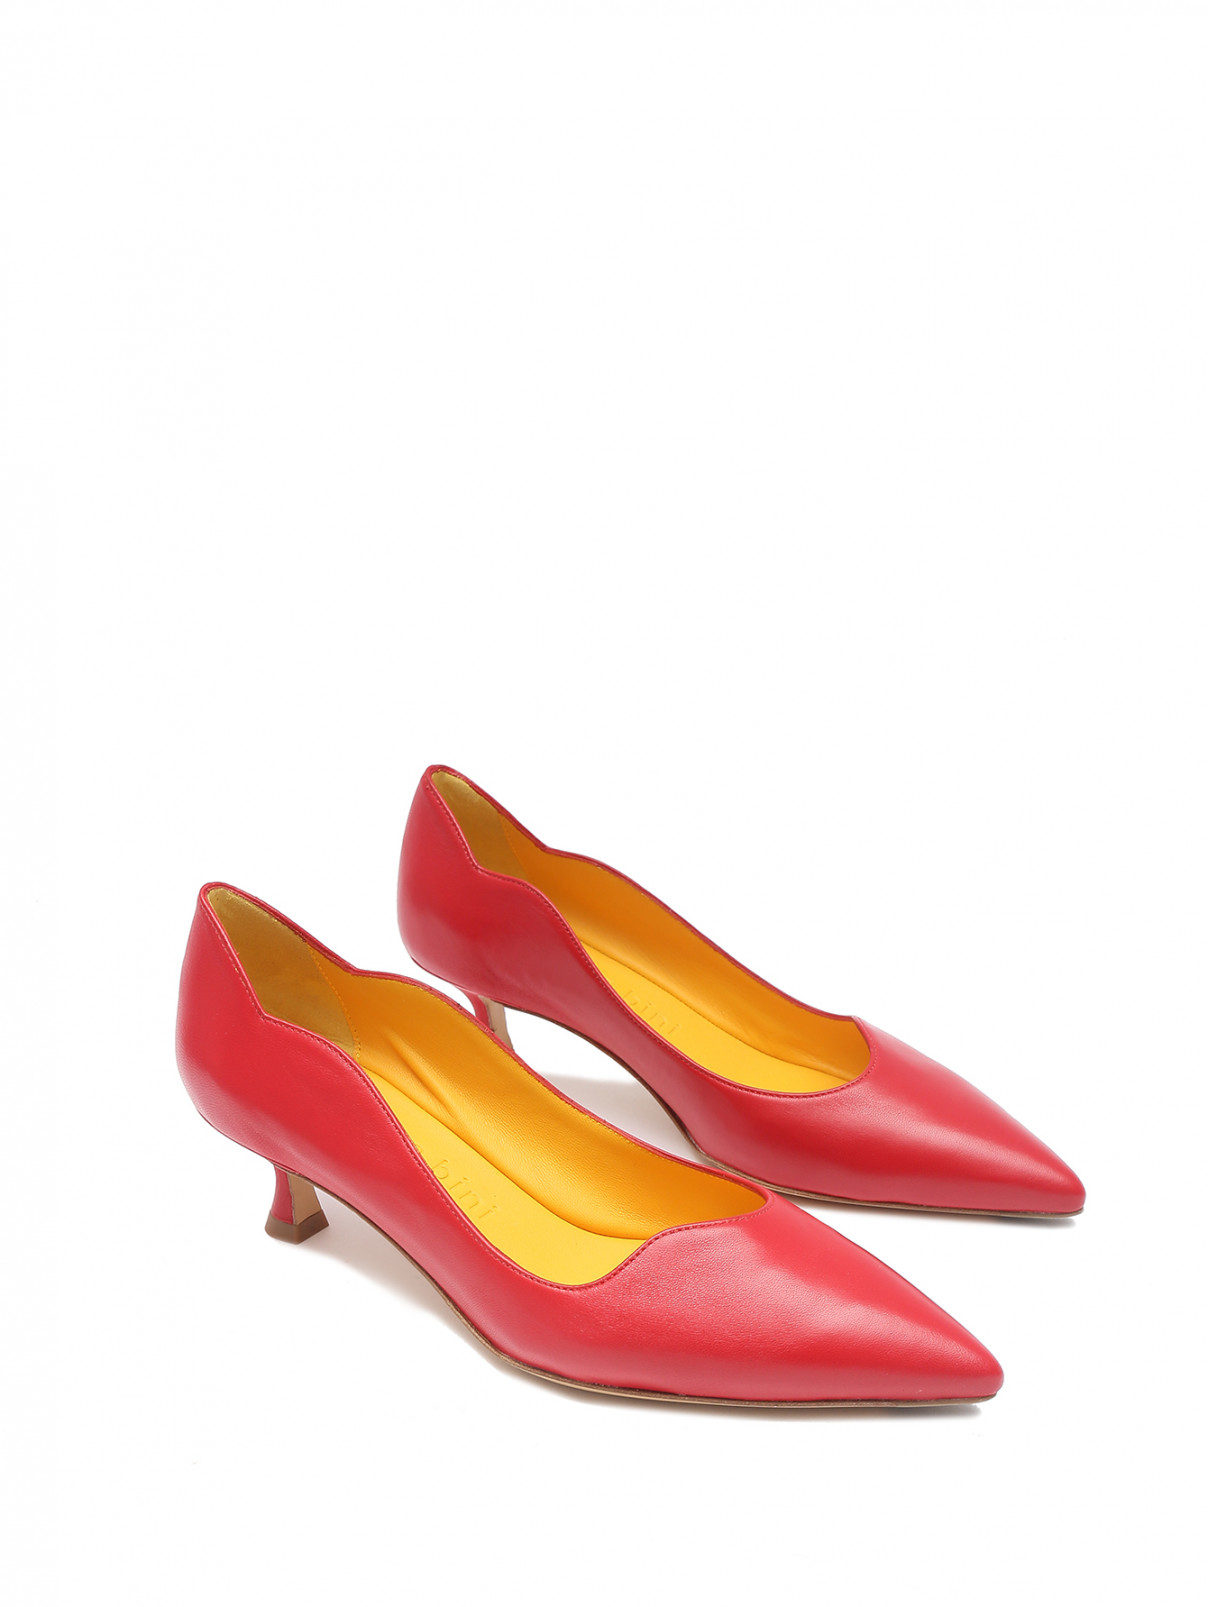 Туфли из кожи на низком каблуке Mara bini  –  Общий вид  – Цвет:  Красный